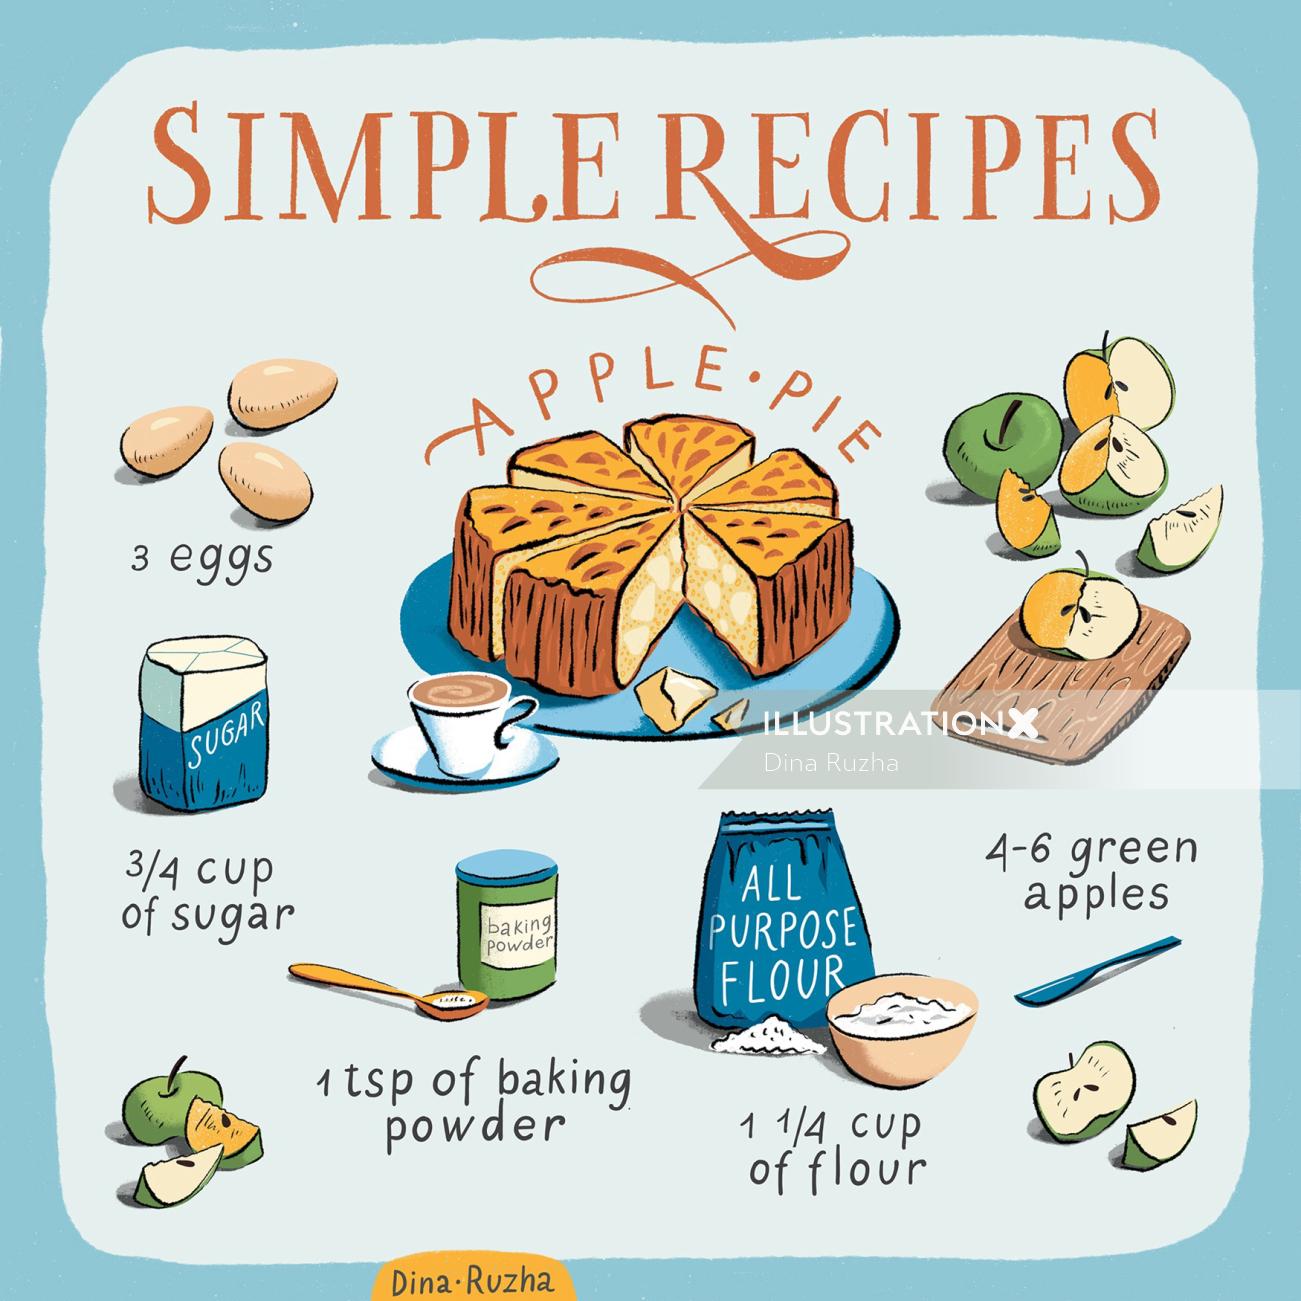 Image éditoriale pour la tarte aux pommes de Simple Recipes